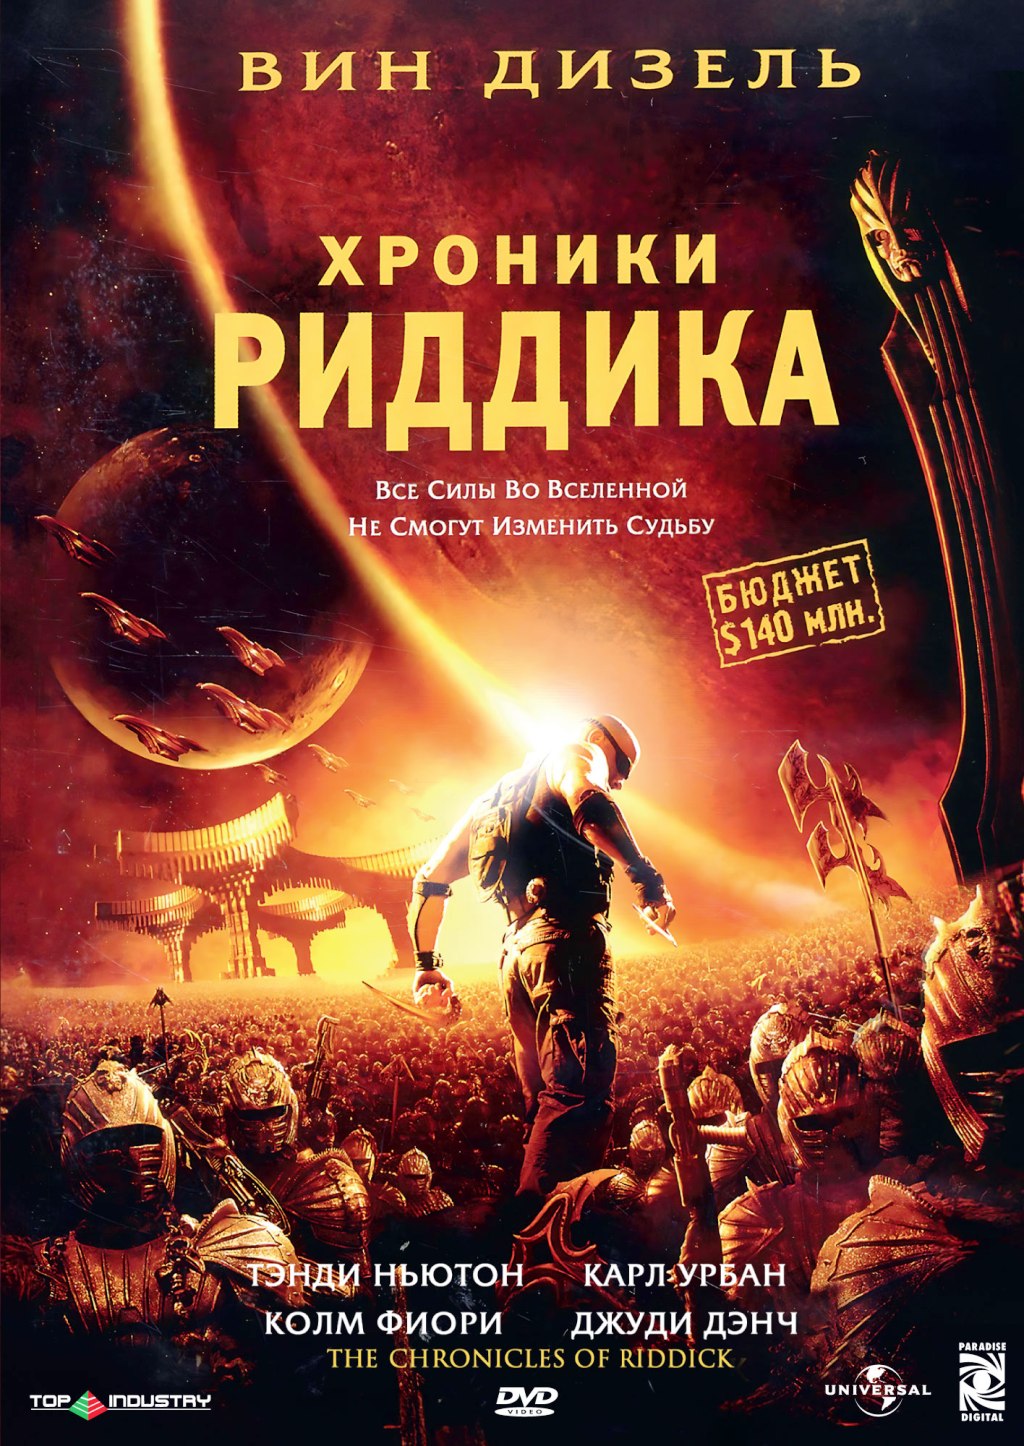 Хроники Риддика (DVD)